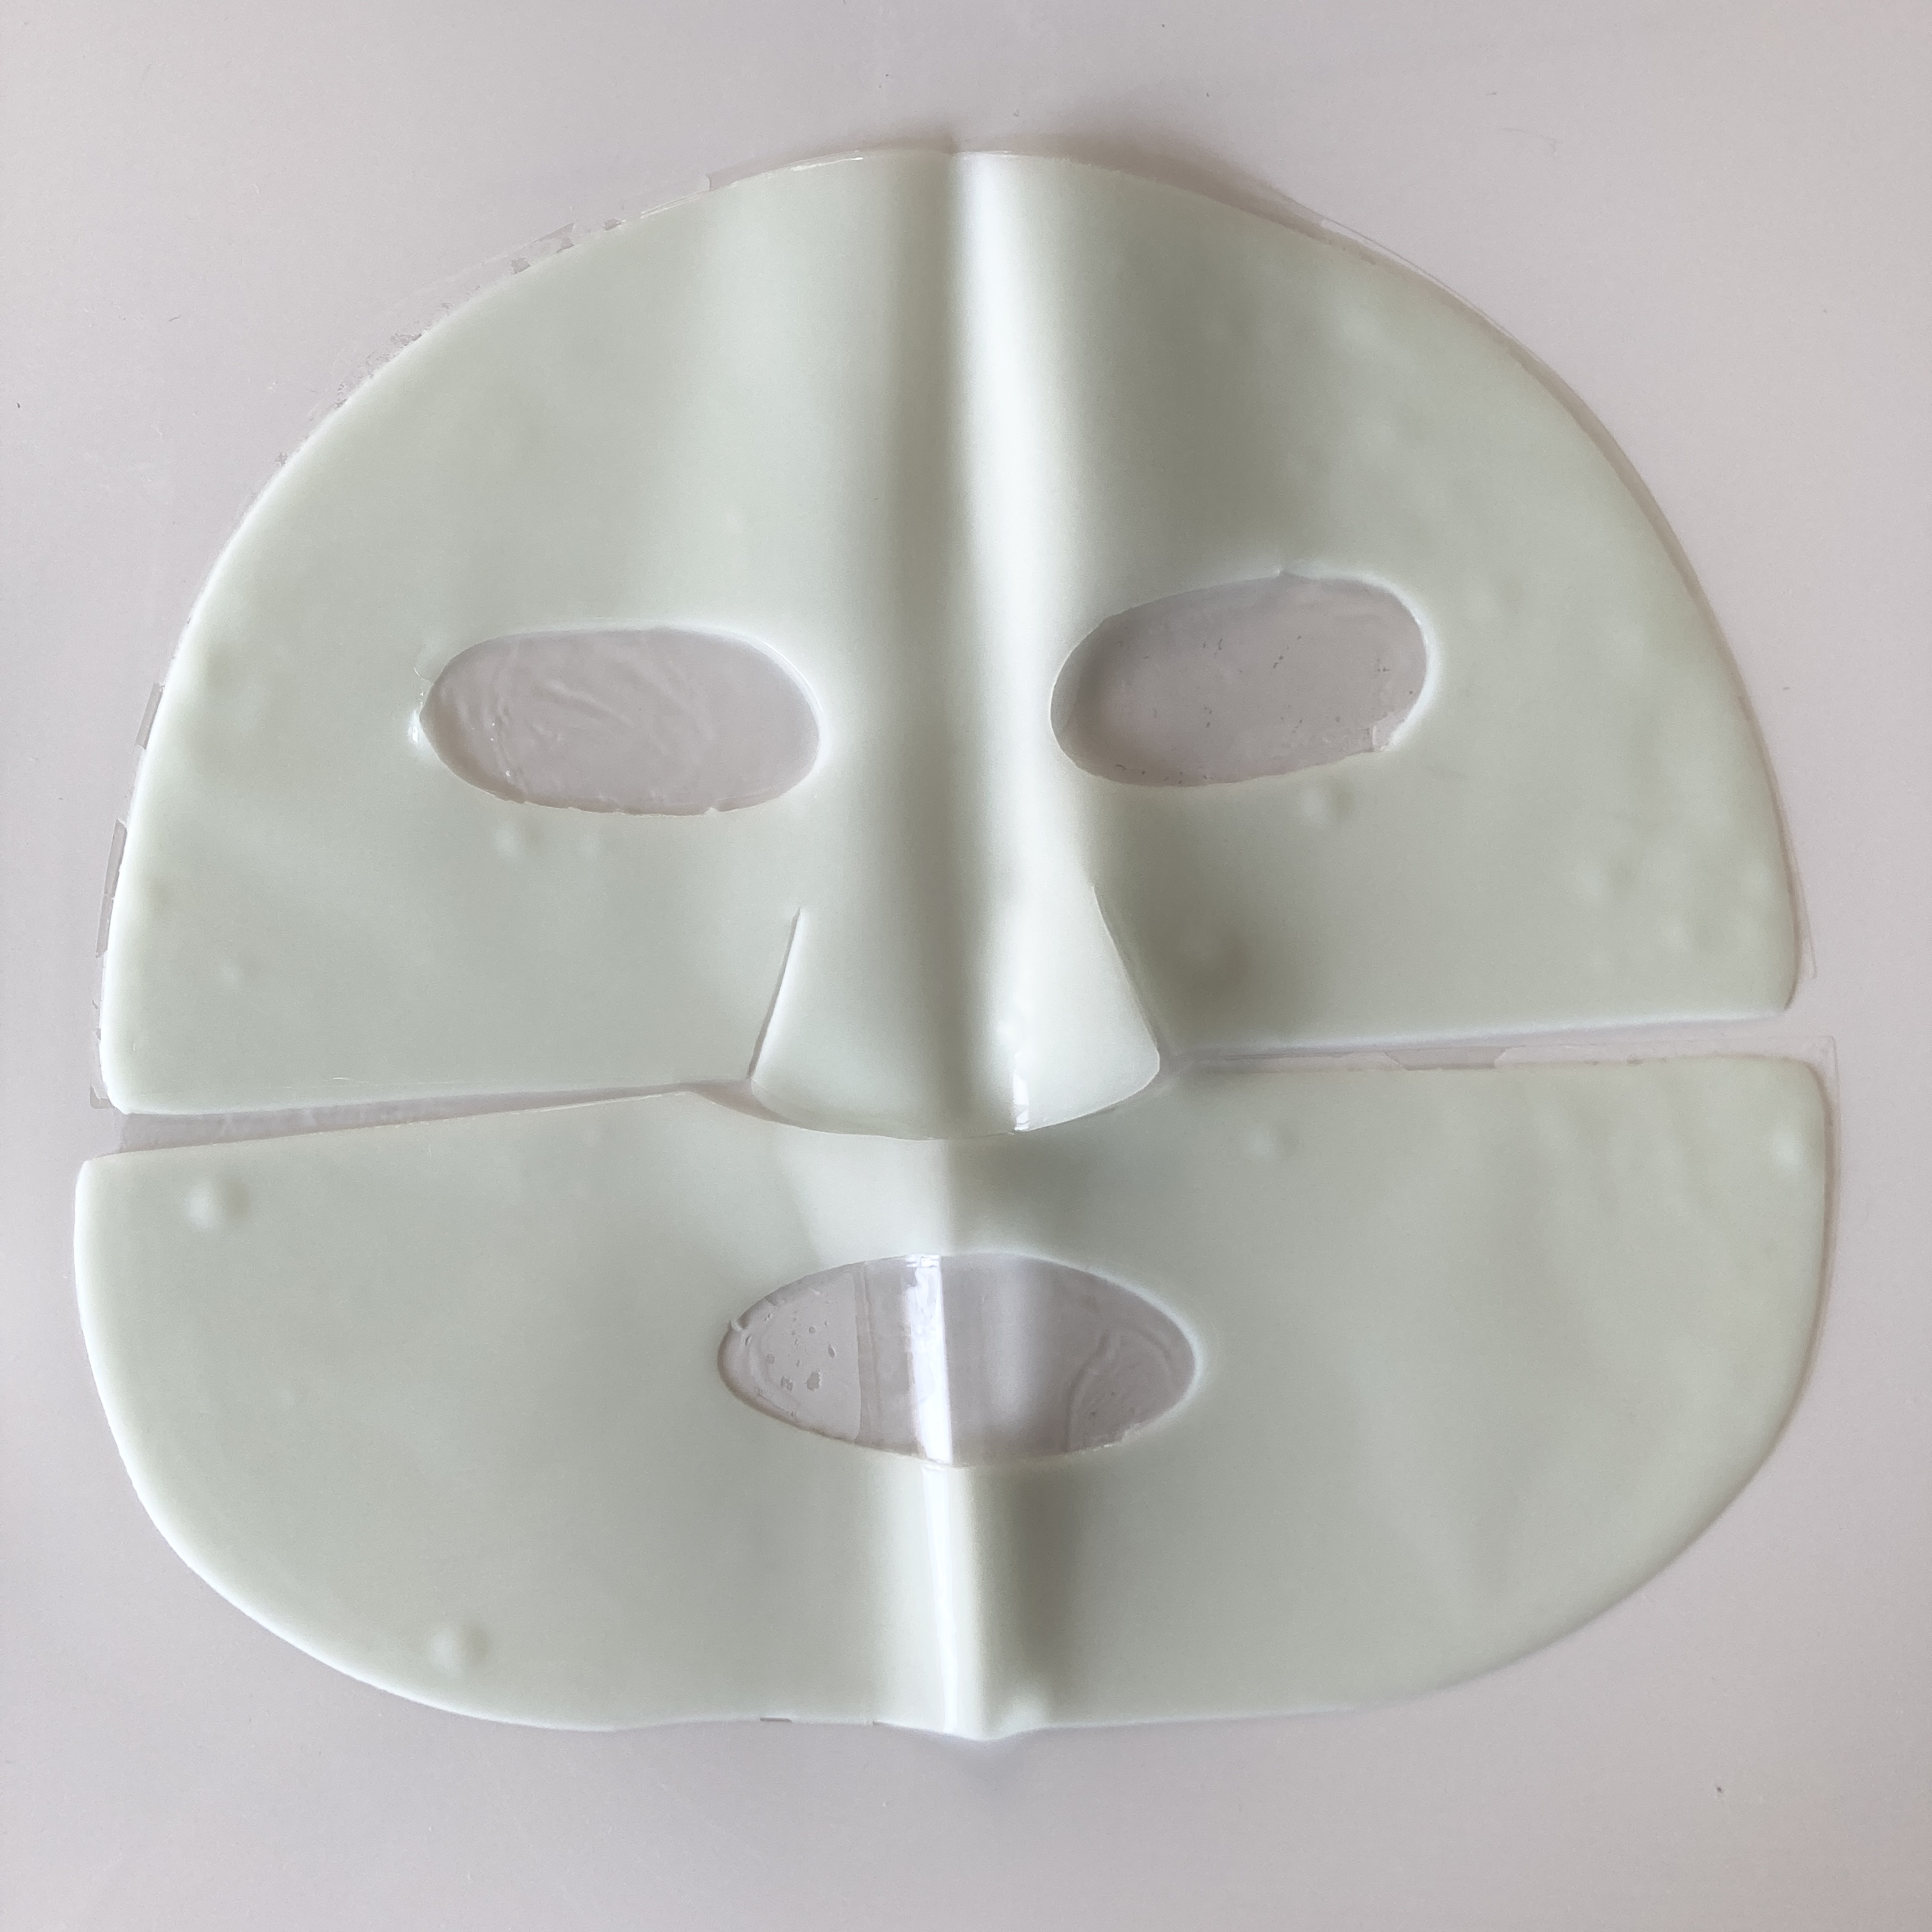 Wellderma(ウェルダーマ) プレミアム シカ トリートメント リペア フィッティング マスクの良い点・メリットに関するみゆさんの口コミ画像3